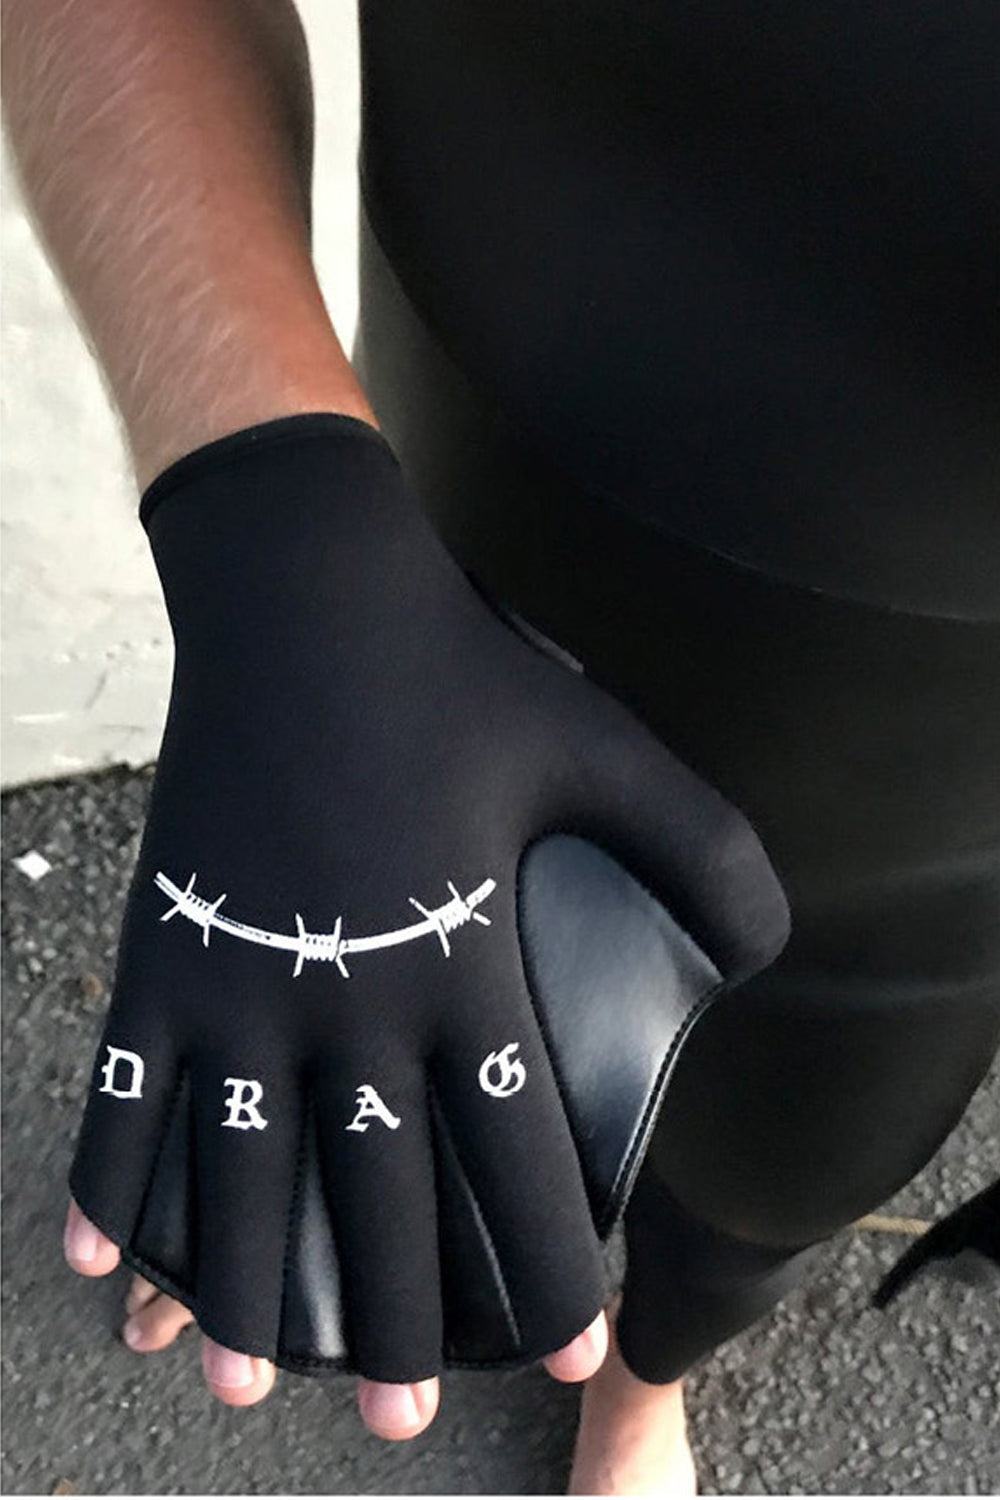 Drag Board Co Hand Drag 1mm Webbed Gloves